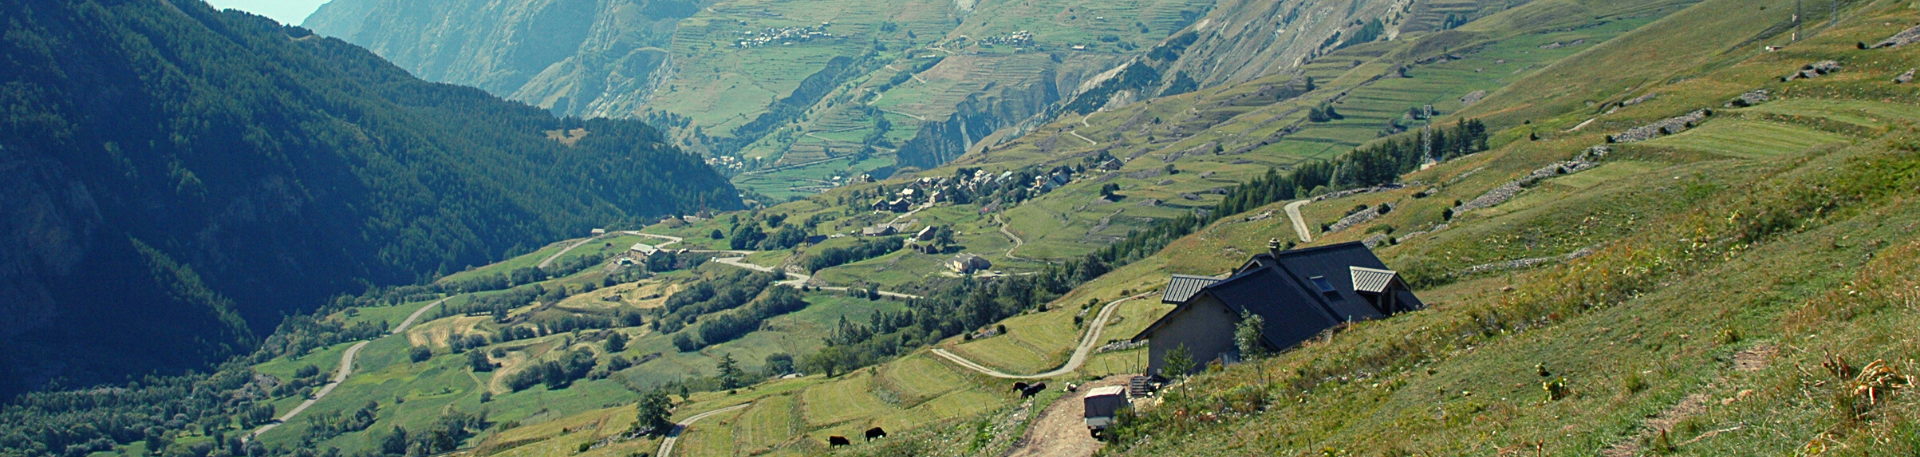 Alpages du Col du Lautaret - Ferme du Lautaret ©J.Selberg